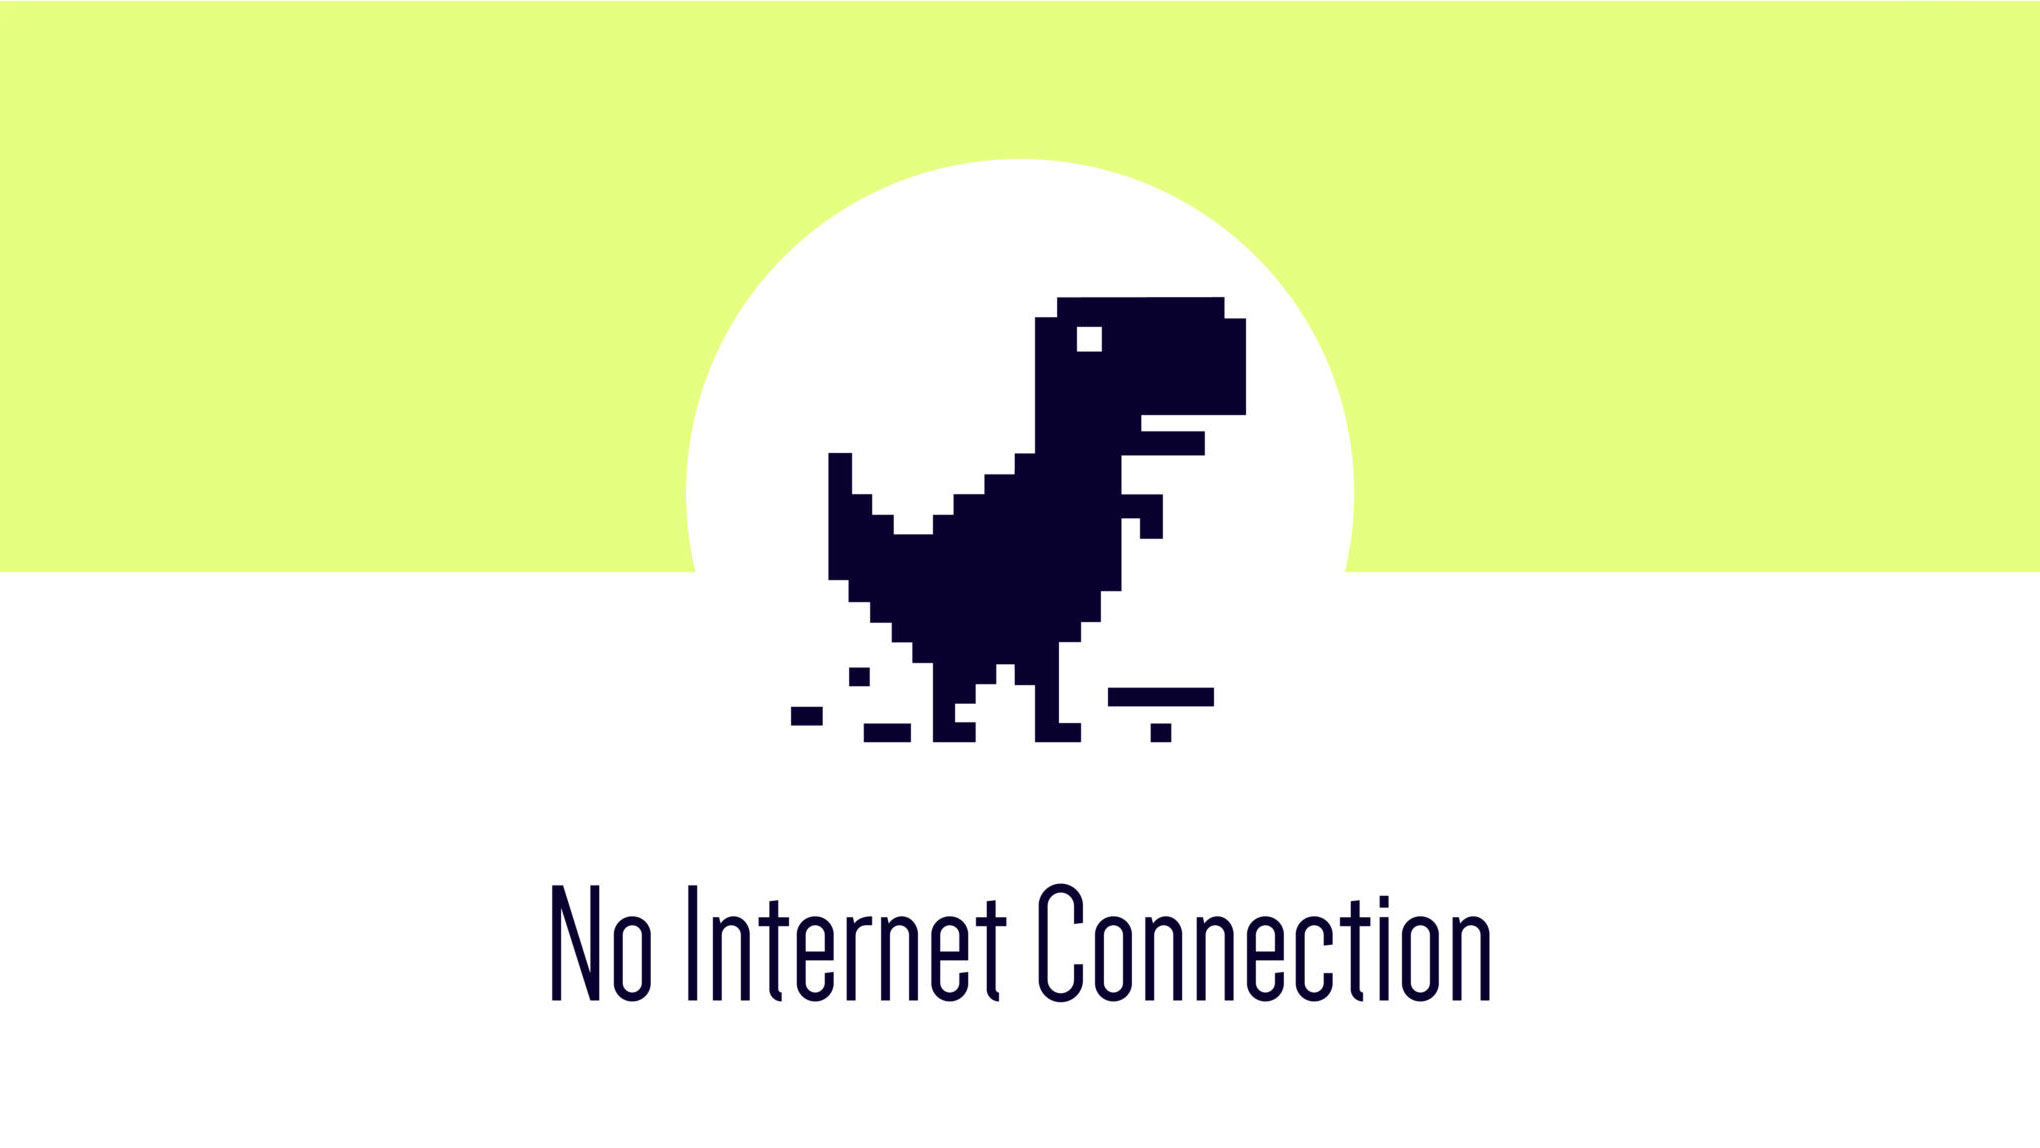 وزارت ارتباطات از علت اختلال اینترنت و جبران خسارات به مشترکین خبر داد